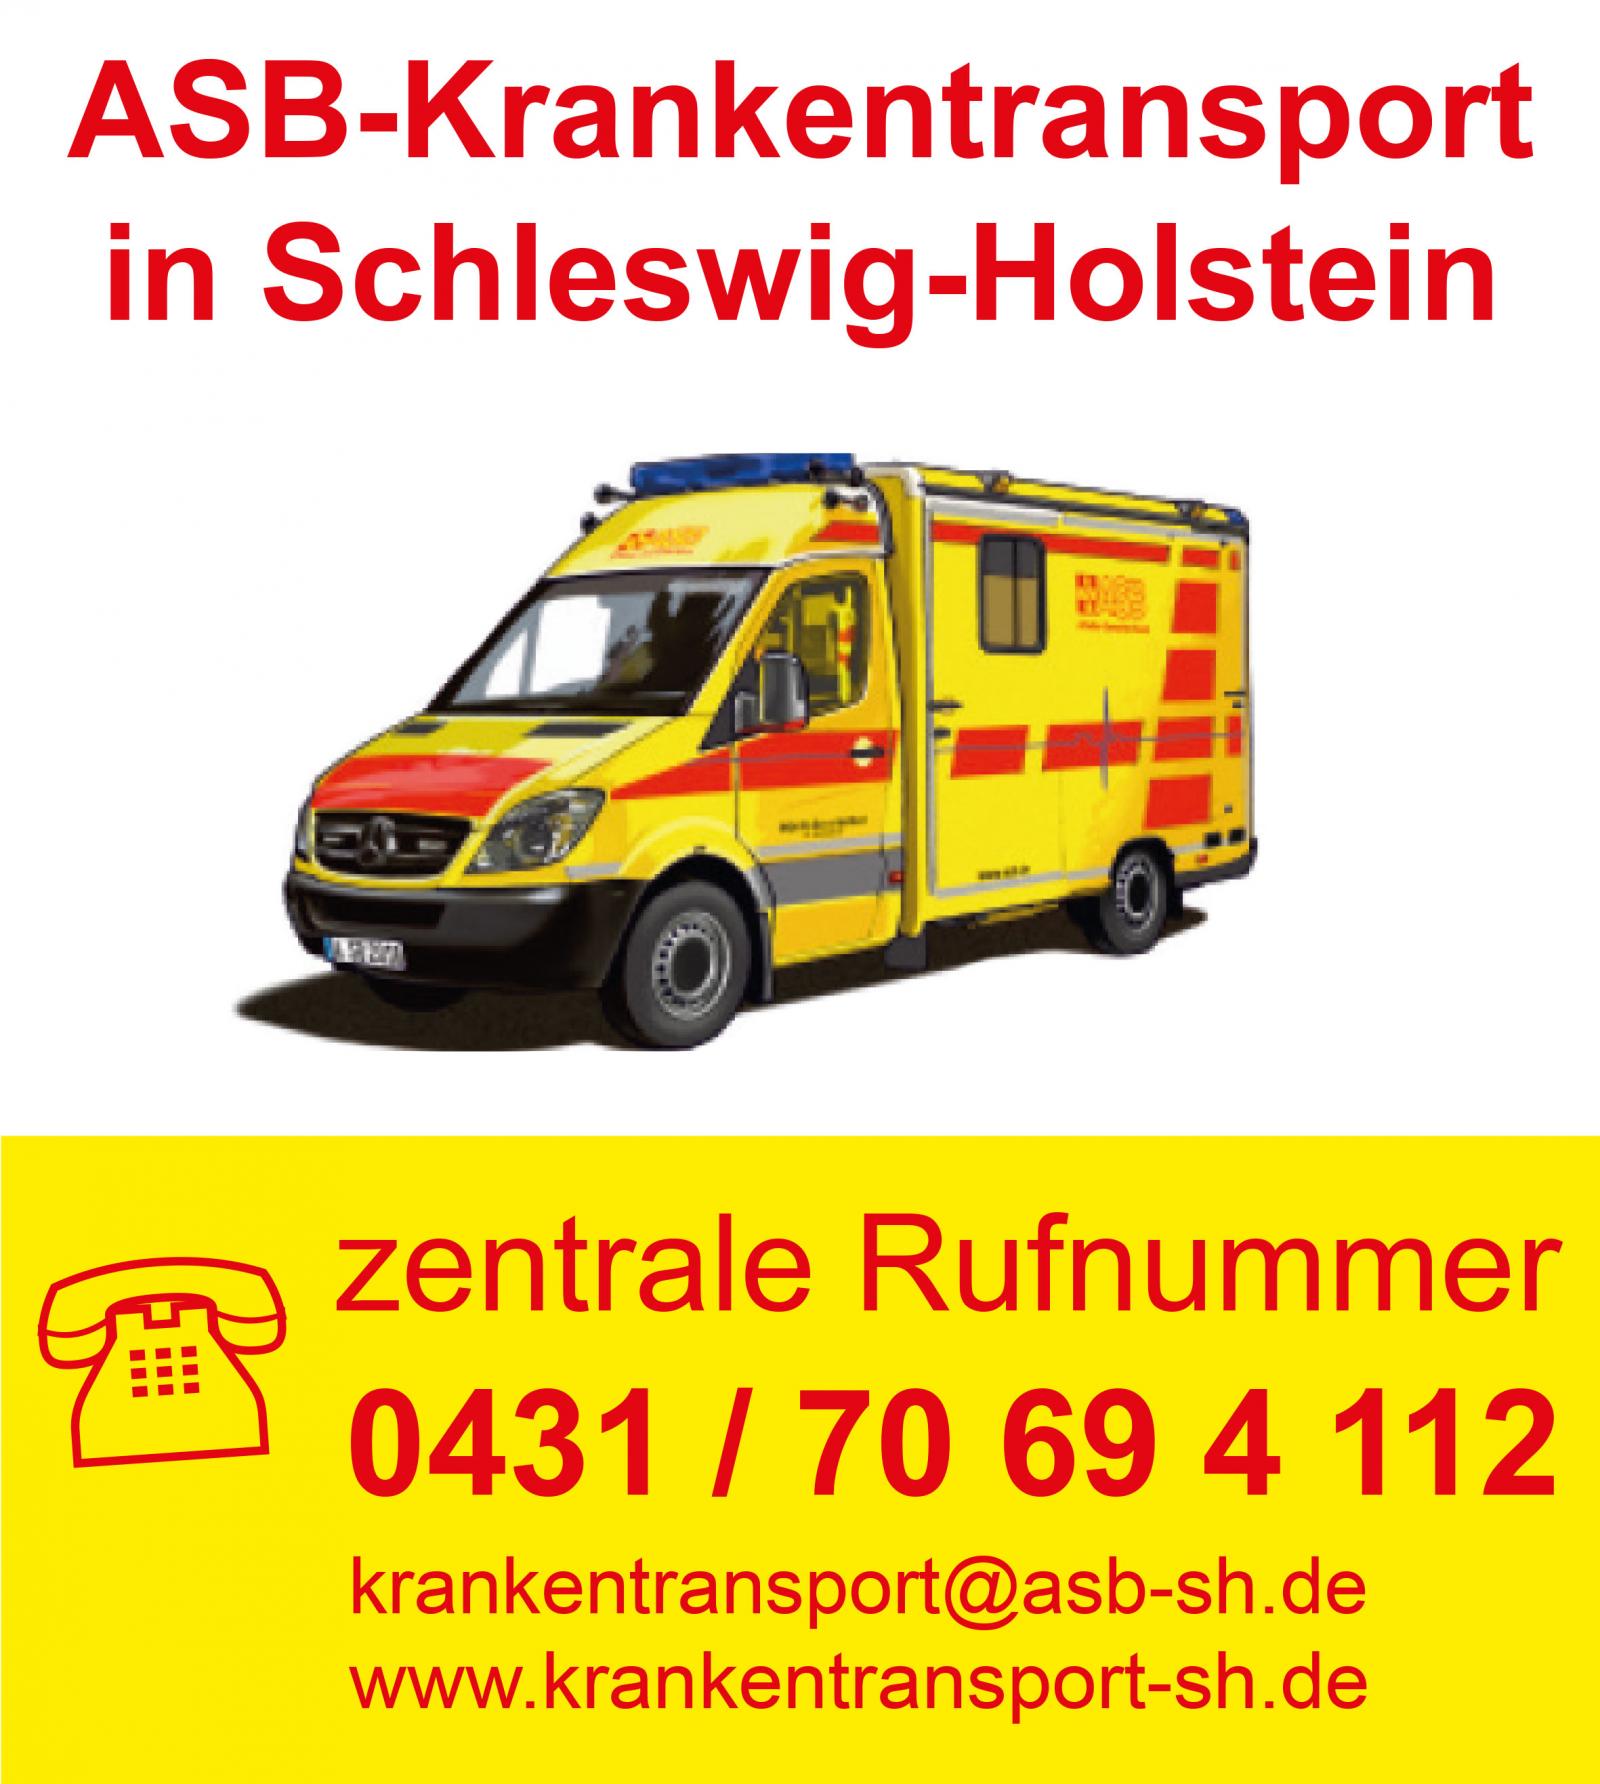 ASB-Krankentransport in Schleswig-Holstein